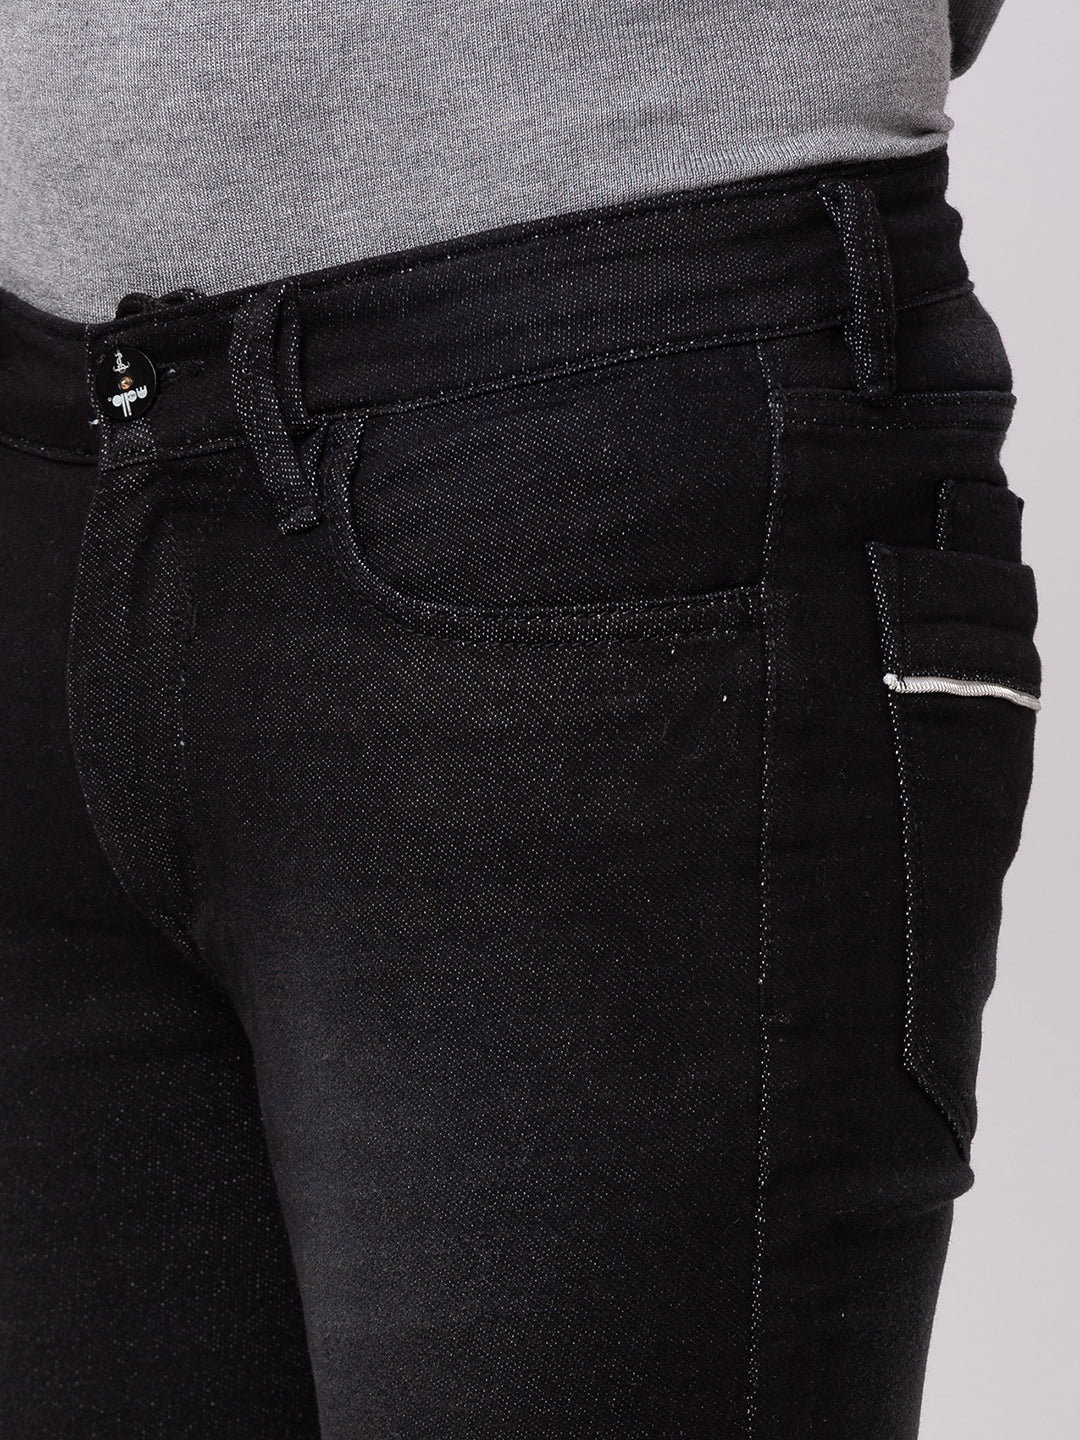 Carbon Black Bootcut Jeans for Men